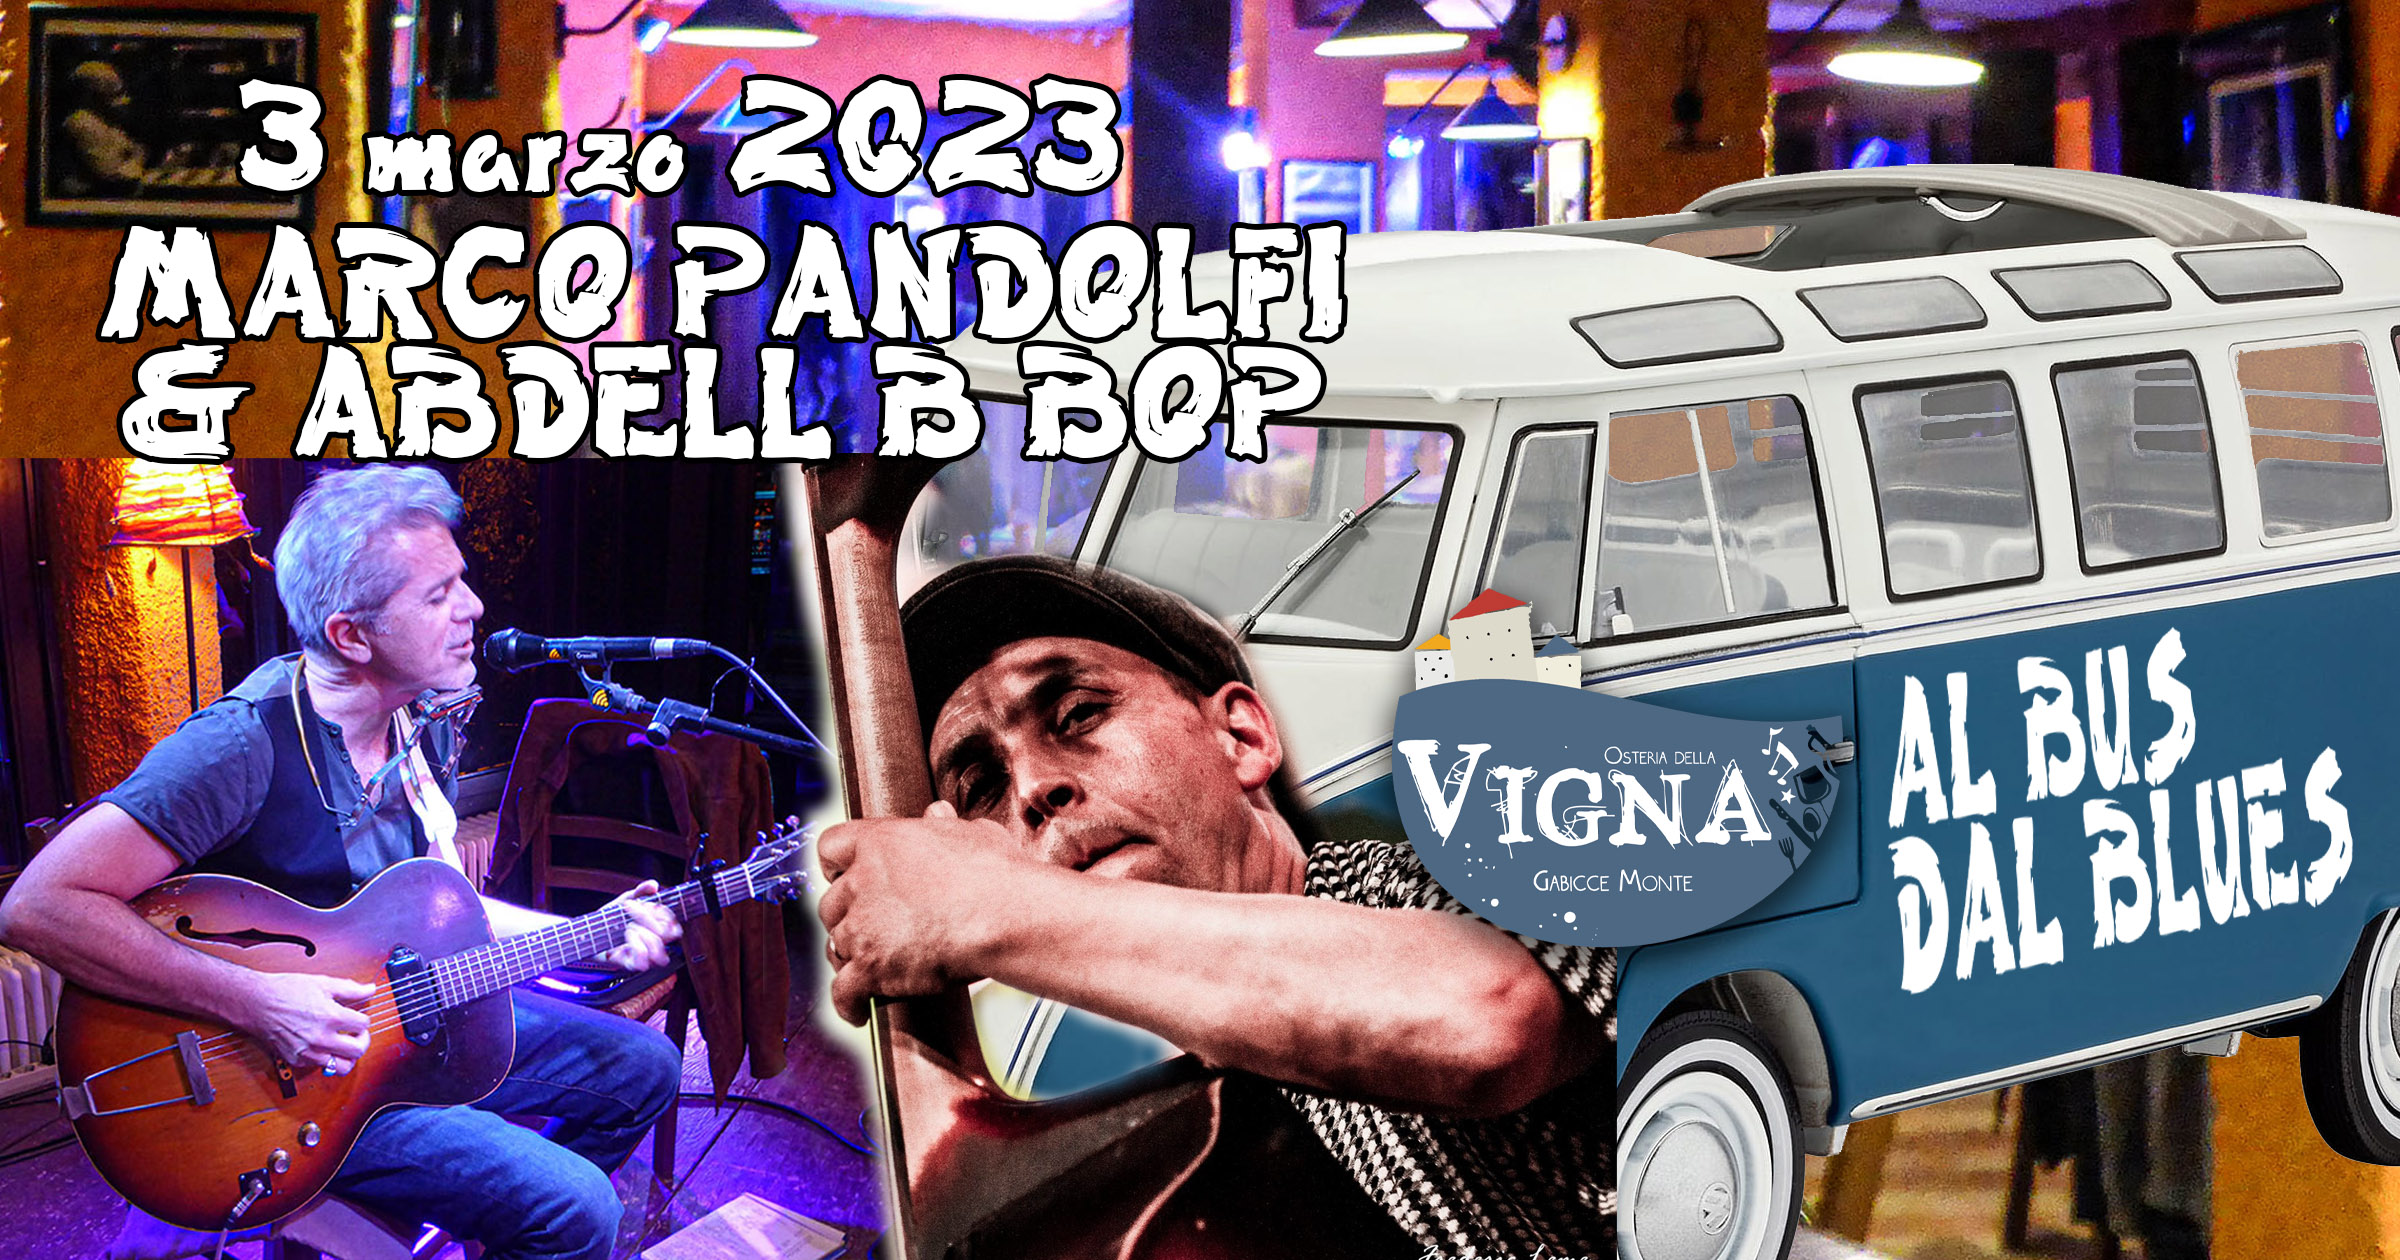 Marco Pandolfi & Abdell BBop @ Al bus del blues 03/03/2023